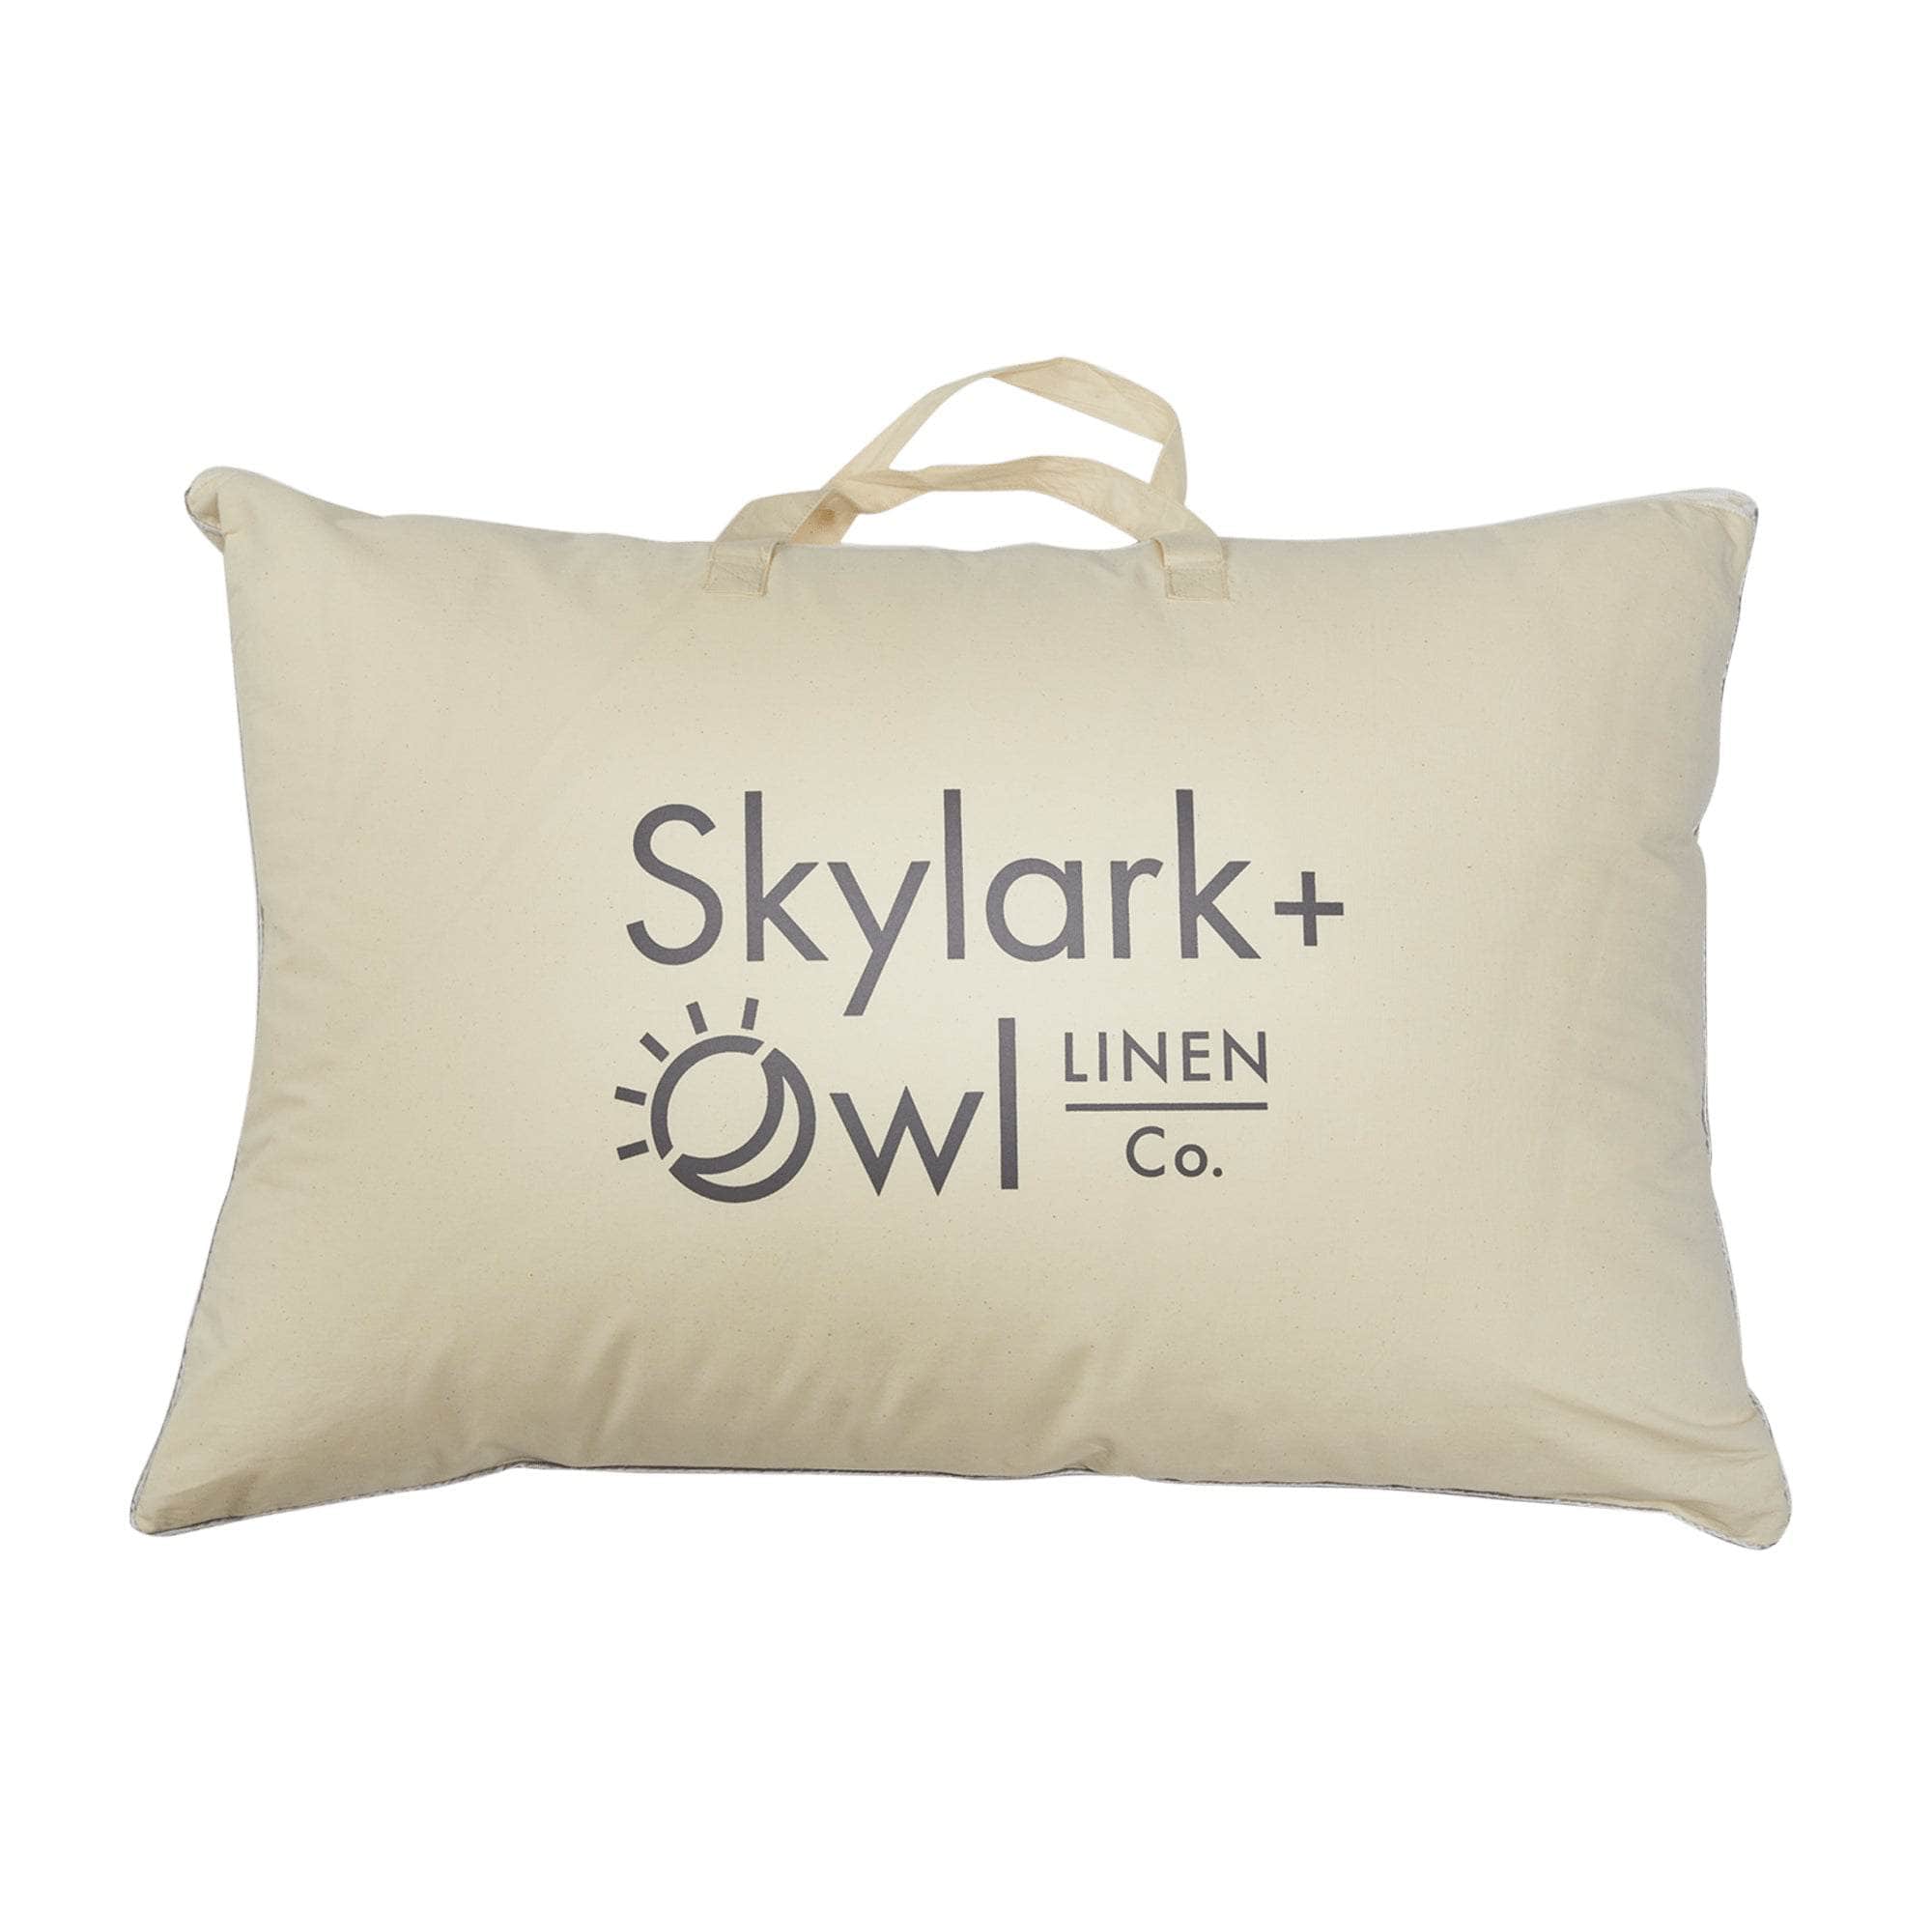 Skylark + Owl LINEN Co. bag with pillow inside